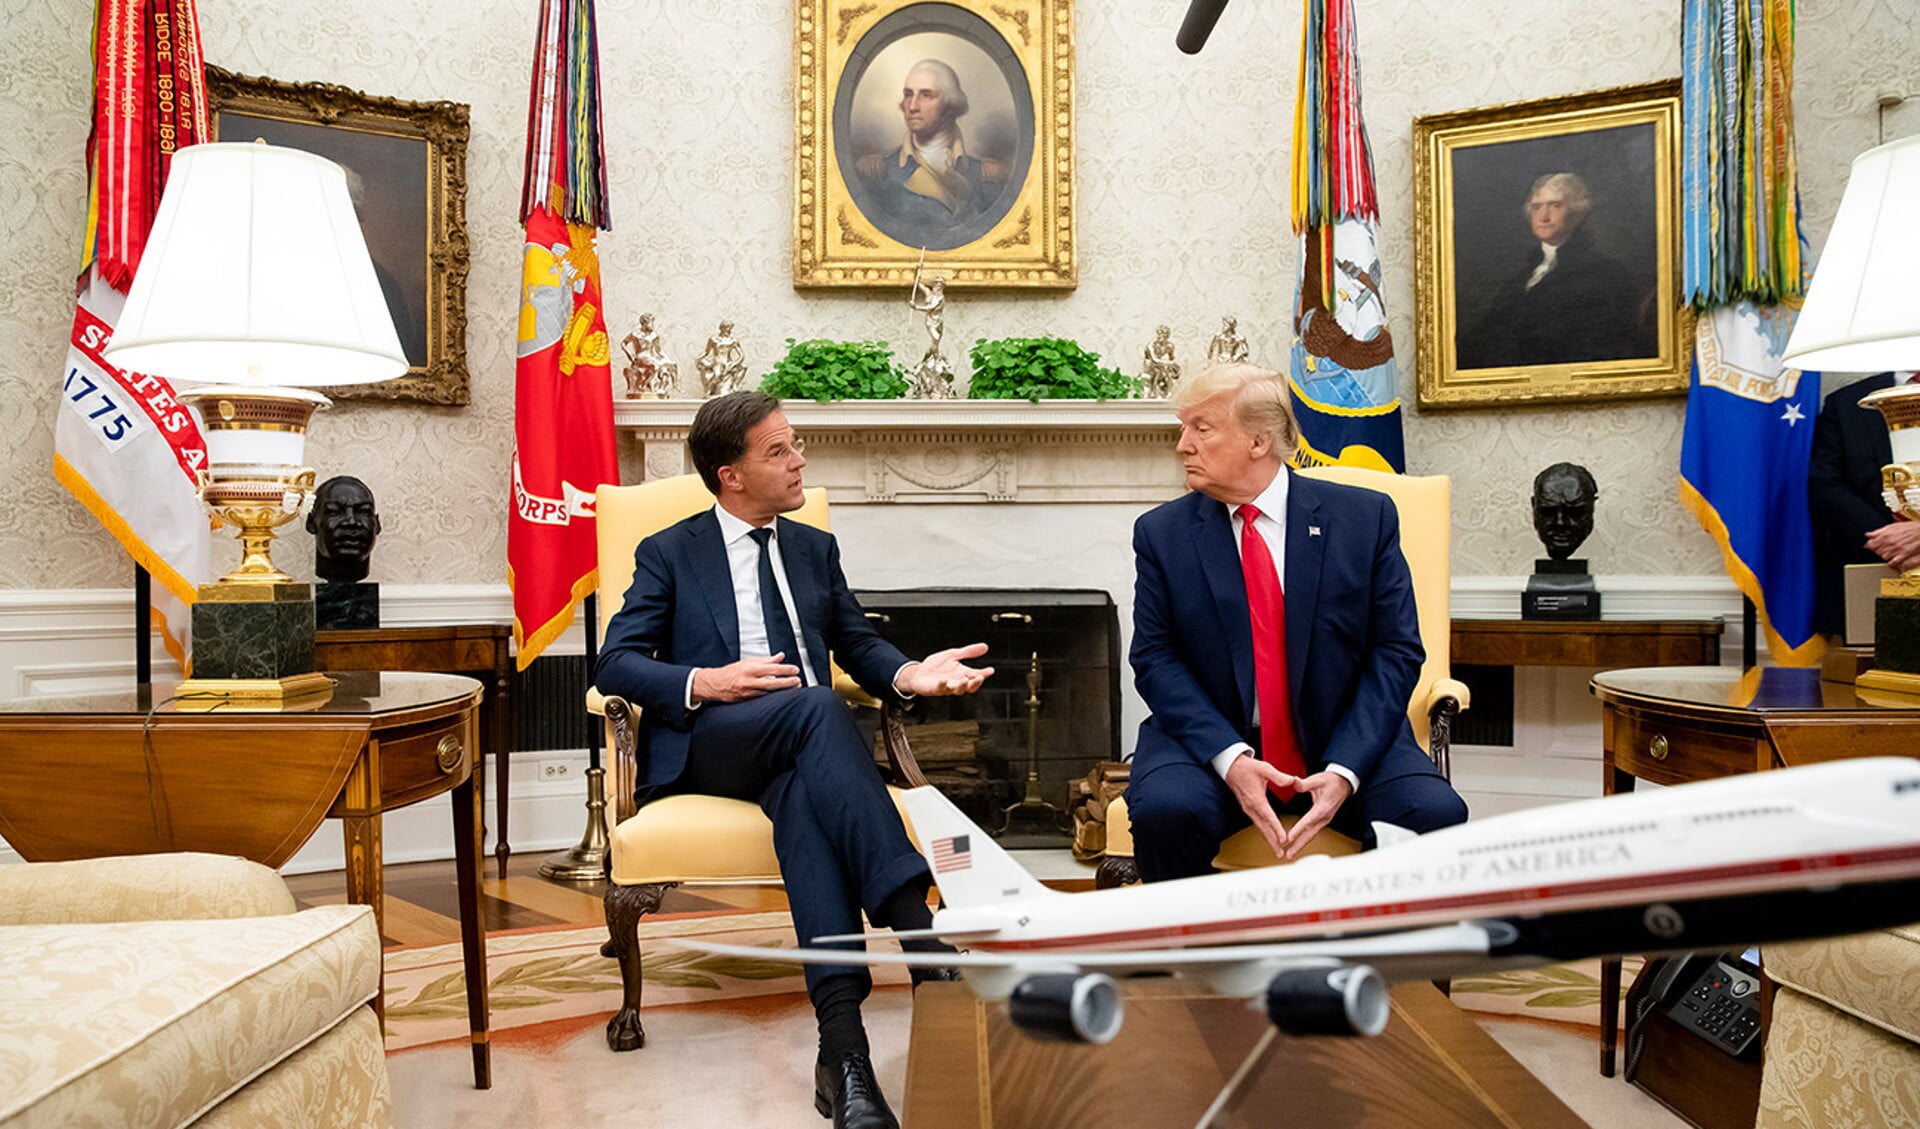 Mark Rutte is een ‘vriend’ geworden, zei president Donald Trump donderdag in het Oval Office van het Witte Huis.